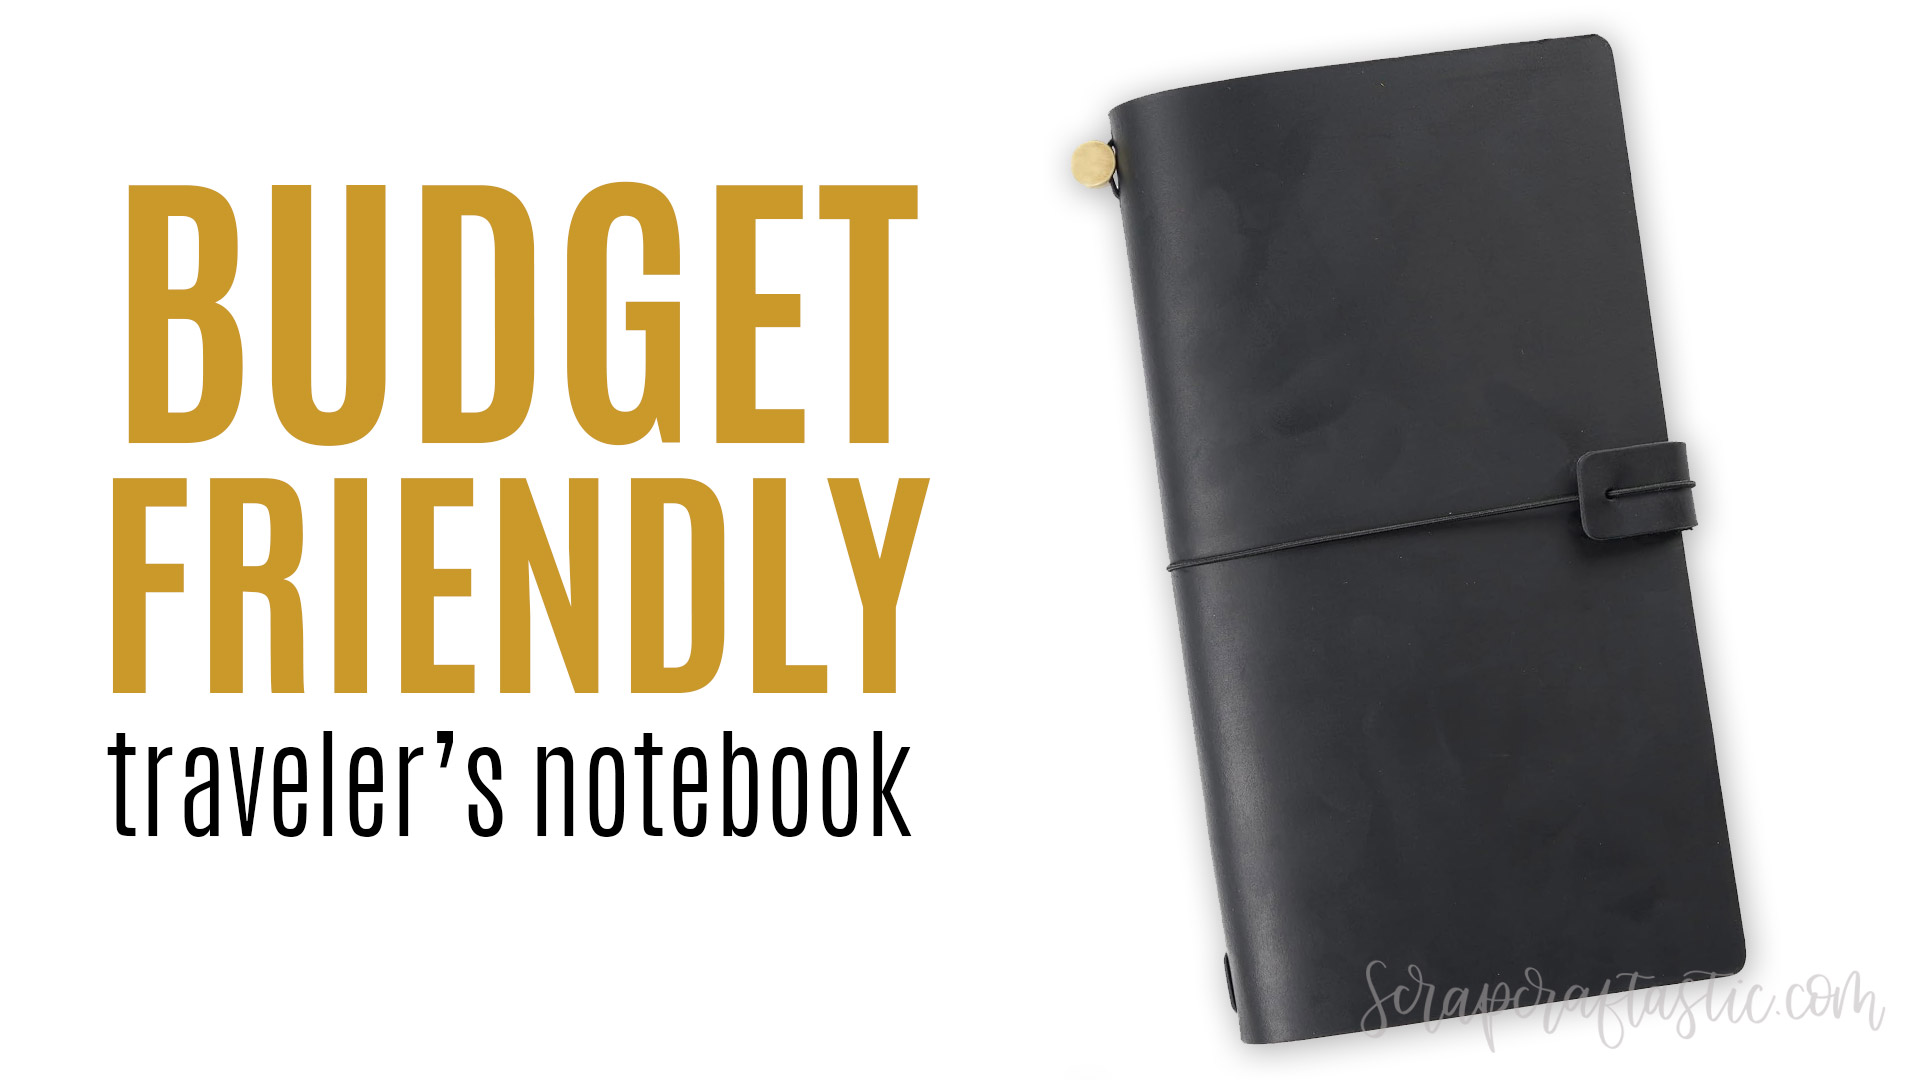 Budget Friendly Traveler's Notebook